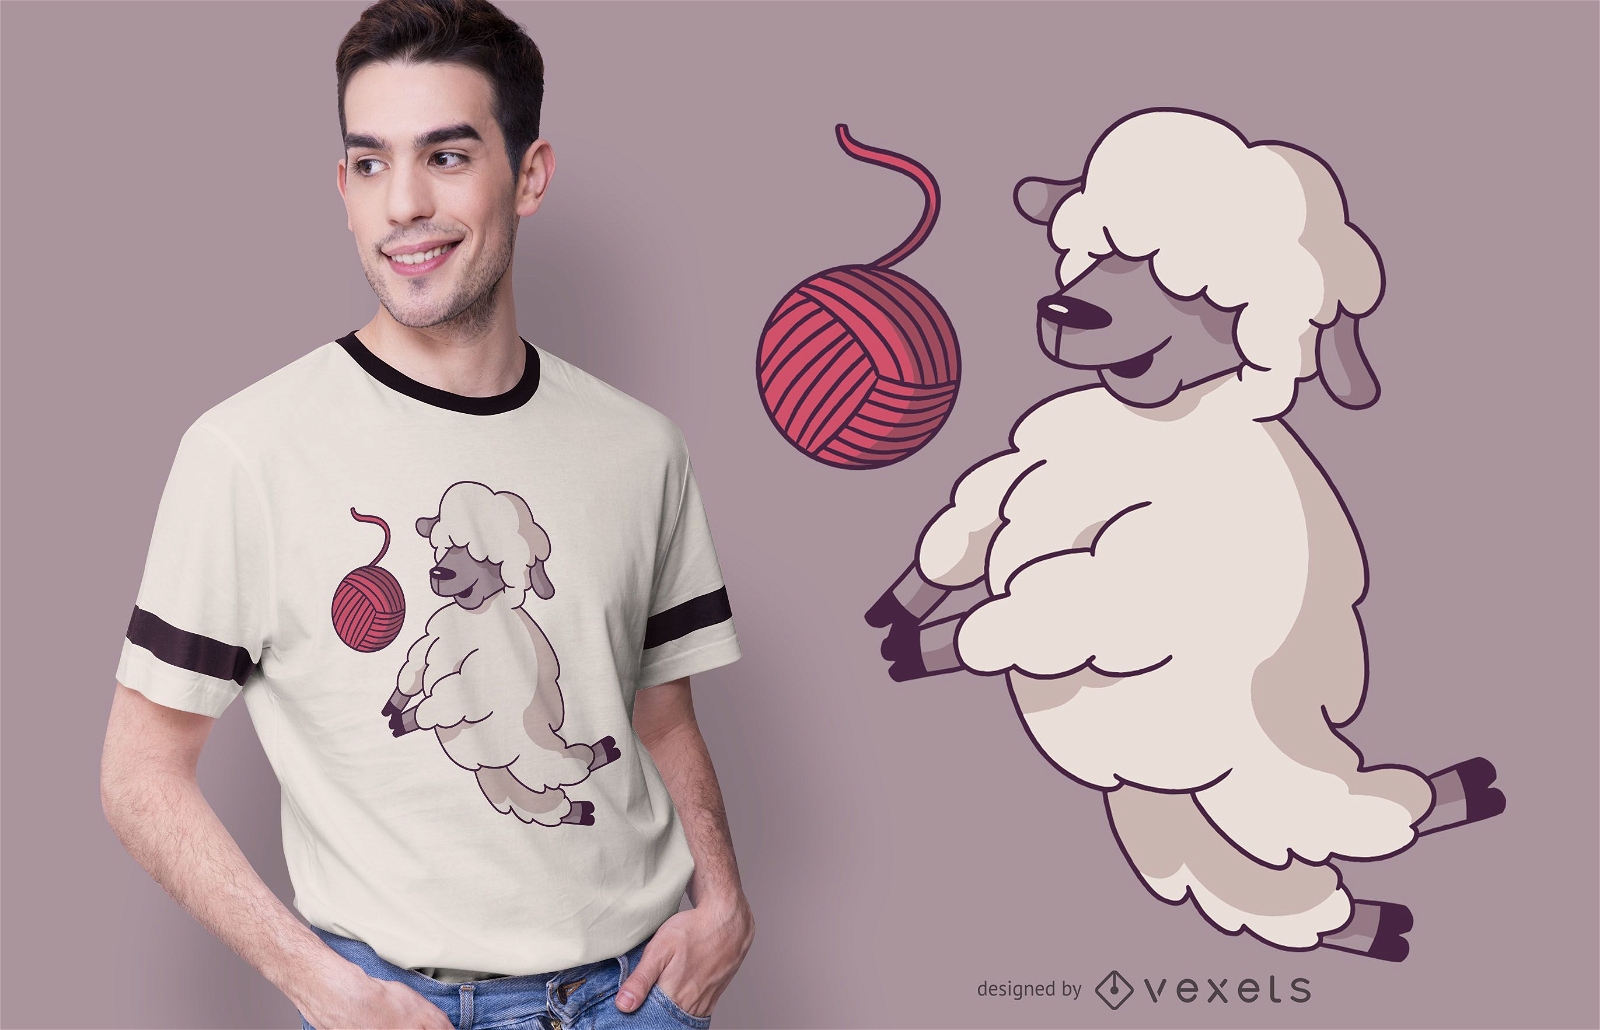 Volleyball sheep t-shirt design